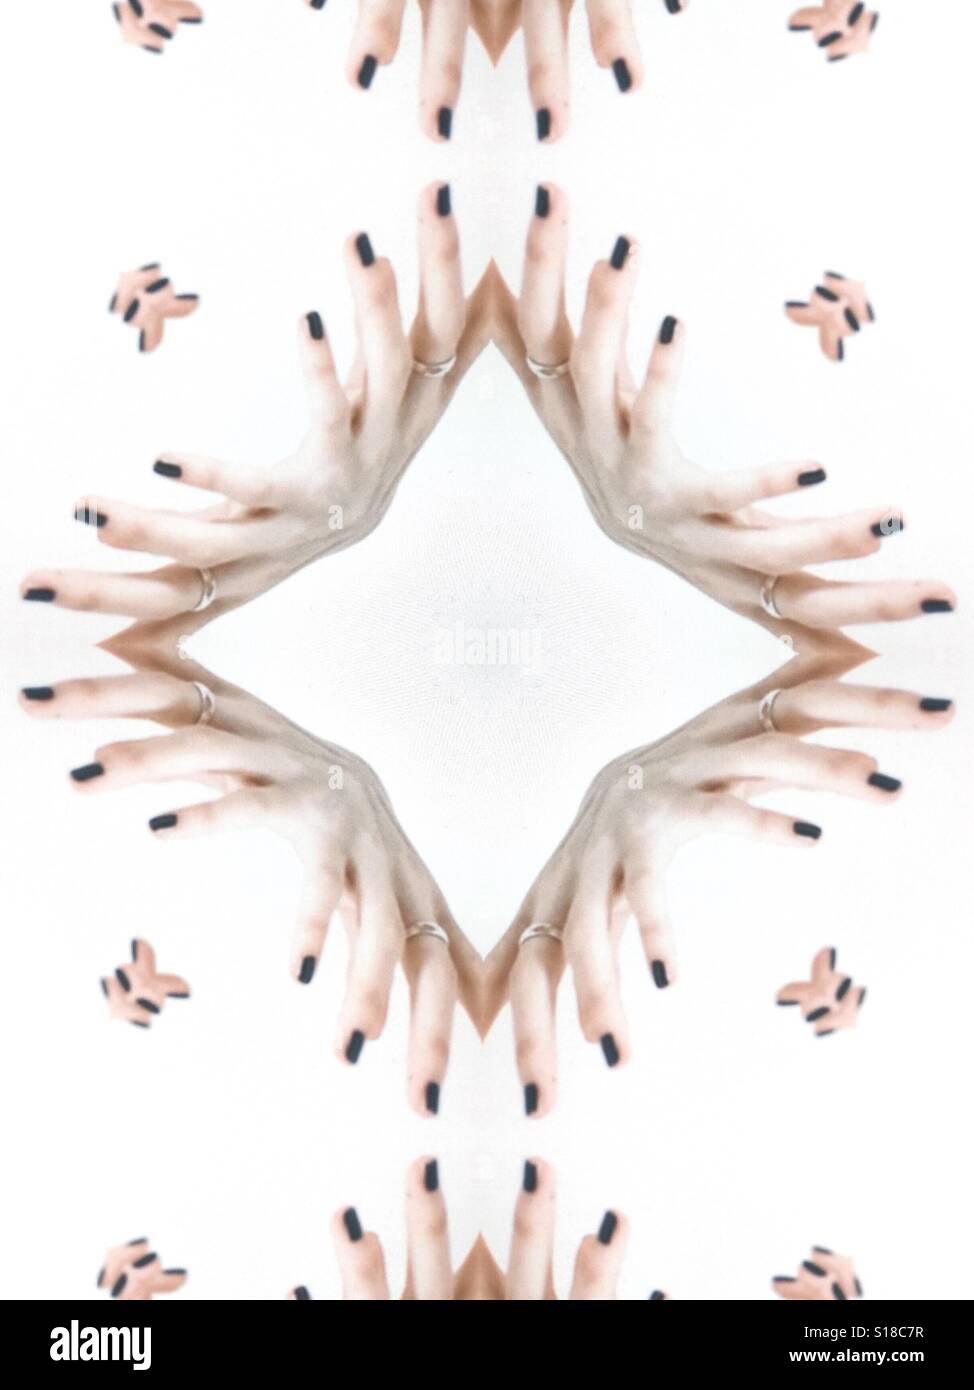 Un abstract immagine concettuale di un disegno ripetitivo. Creato da dita femmina contro uno sfondo bianco Foto Stock